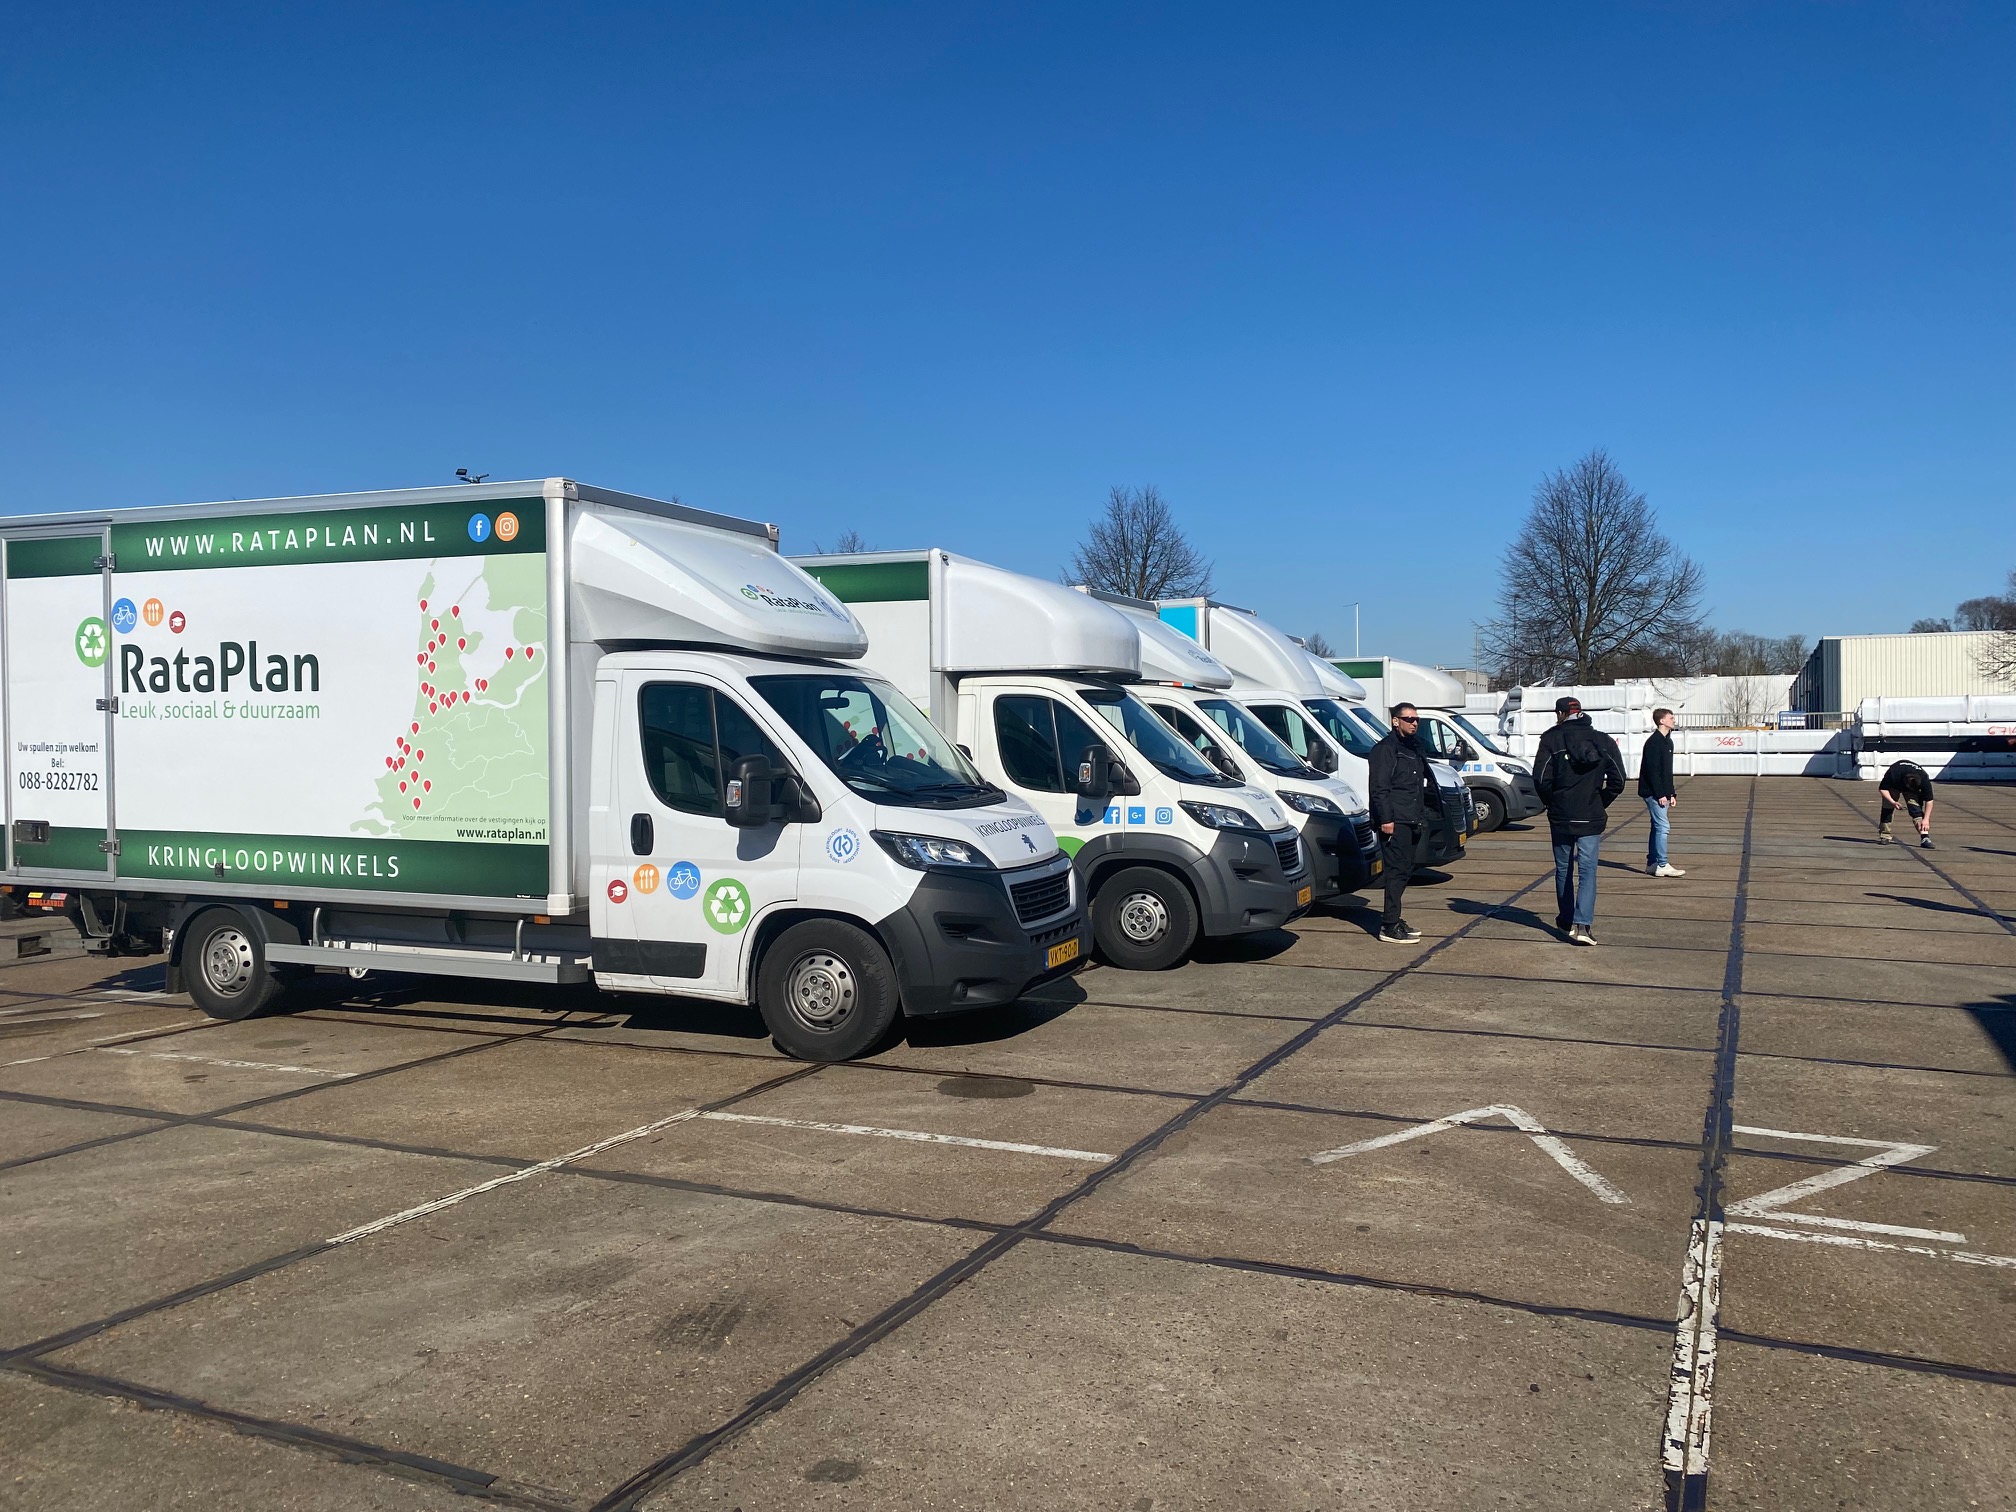 Stichting Rataplan lorries unloading at Van der Wal